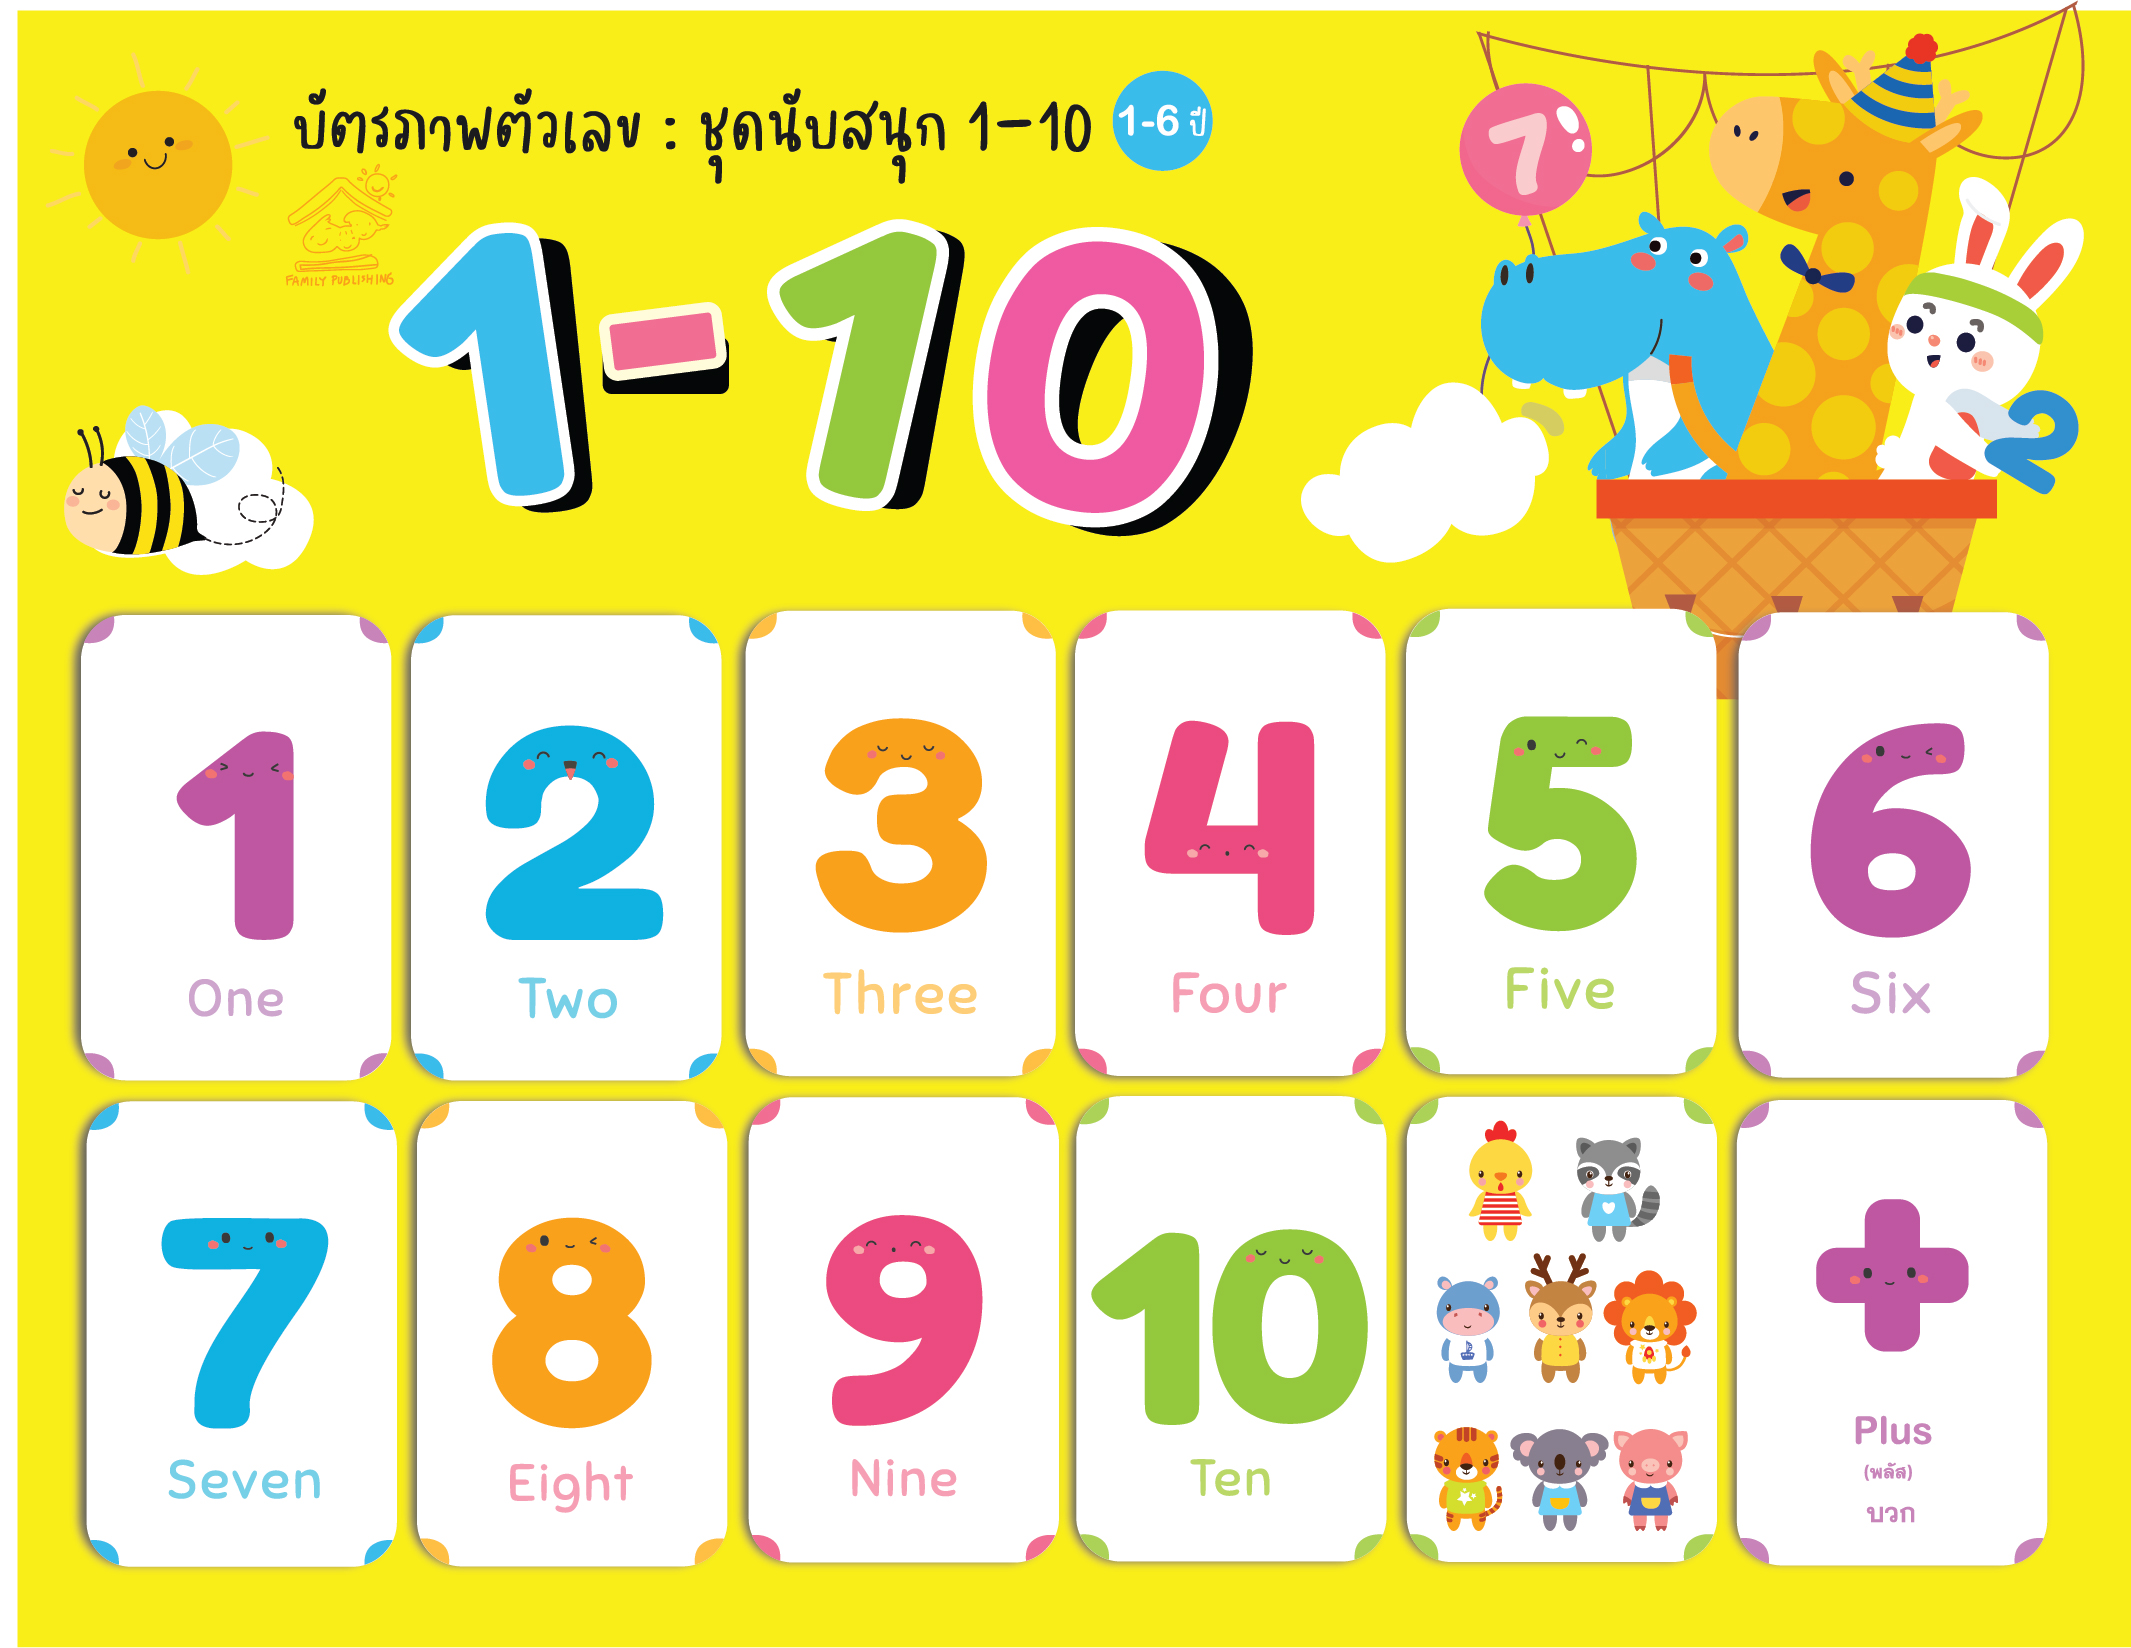 บัตรภาพคำศัพท์ ชุดภาพเลข 1-10 จำนวน23ใบ สำหรับเด็กอายุ 1-6 ปี  สื่อการเรียนรู้สำหรับเด็ก บัตรภาพ 2 ภาษาอังกฤษ-ไทย สอนคำศัพท์ - ปิงปิง &  ป๋องแป๋ง - Thaipick